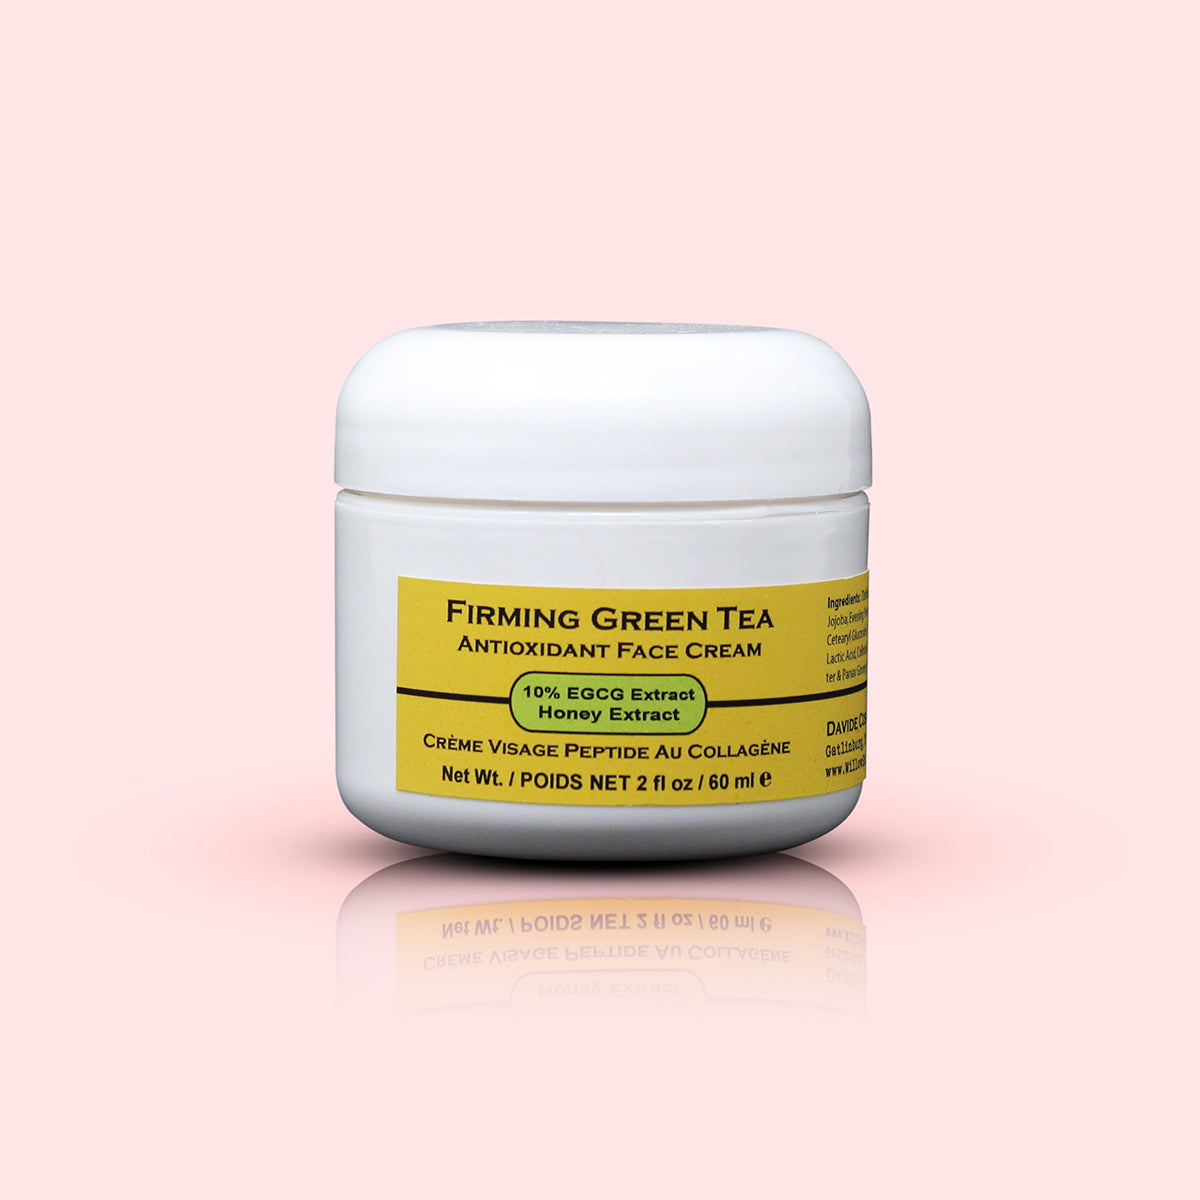 Firming Green Tea Antioxidant Face Creme